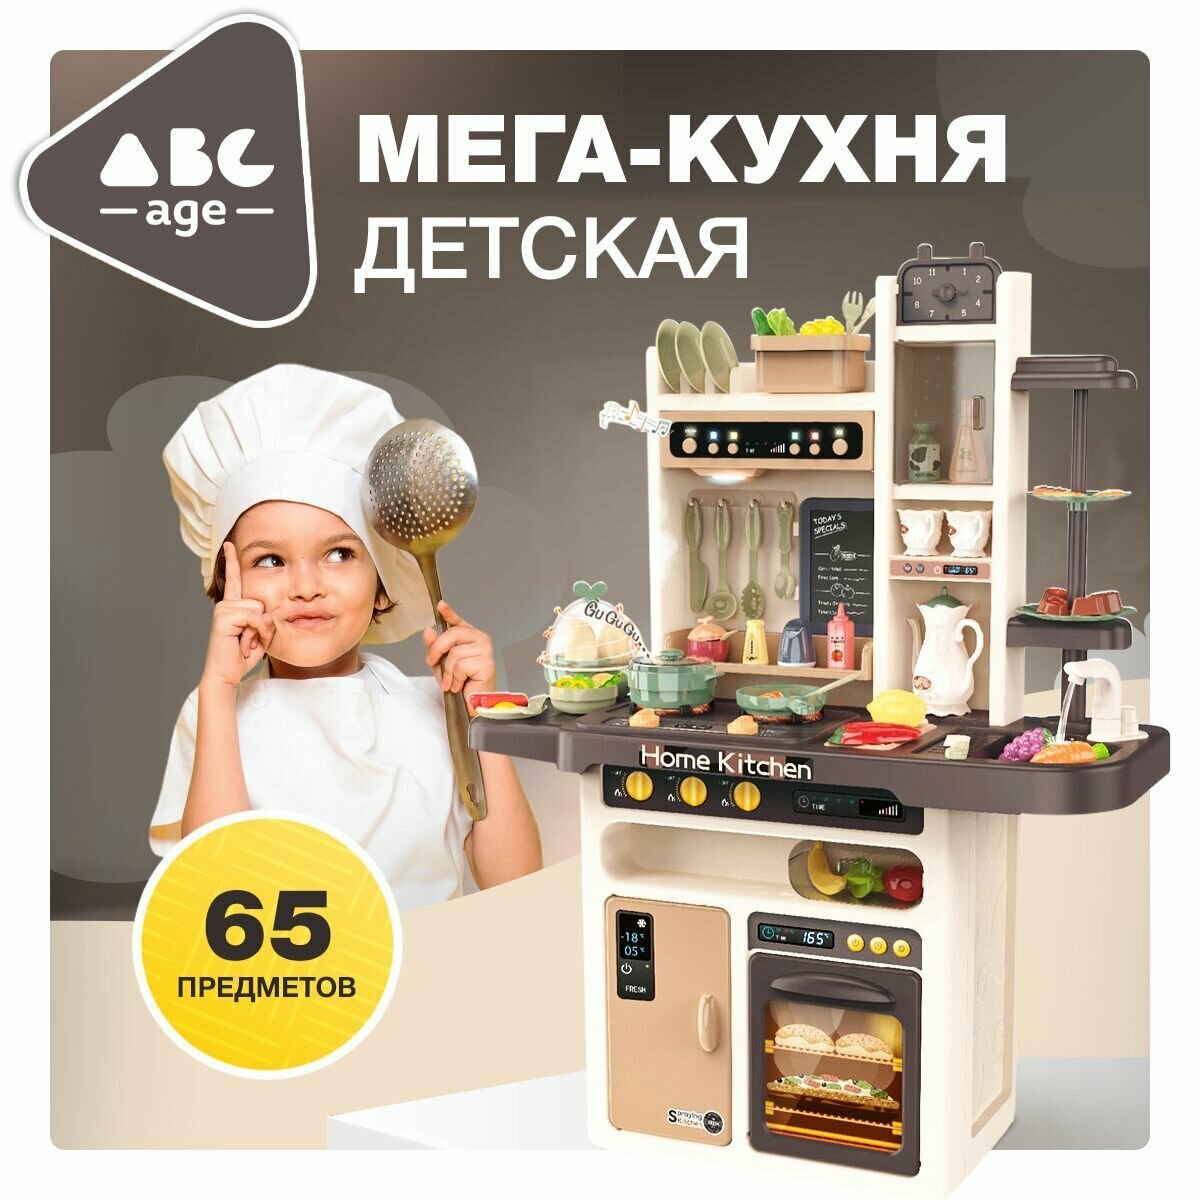 Детская игровая кухня abcAge, 65 Предмета, с подачей воды и пара